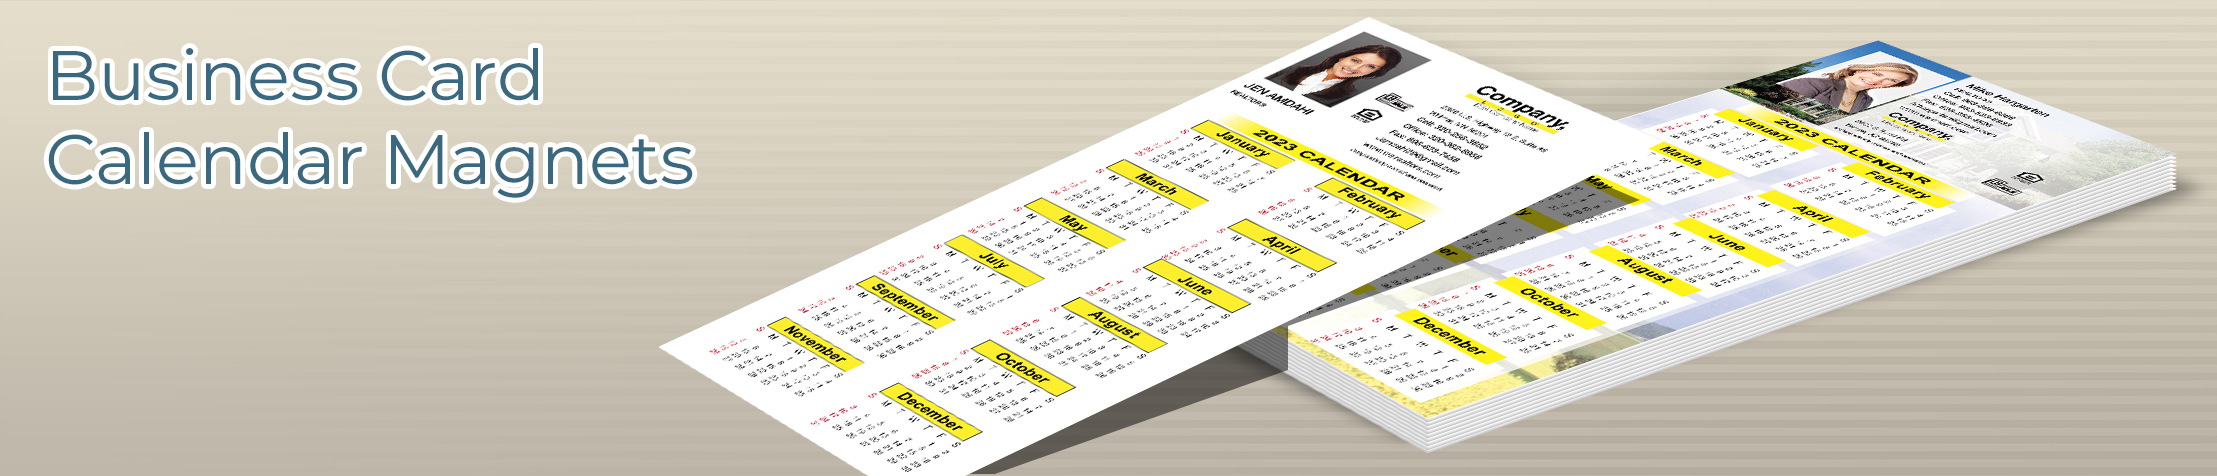 Weichert Real Estate Business Card Calendar Magnets - Weichert  personalized marketing materials | BestPrintBuy.com